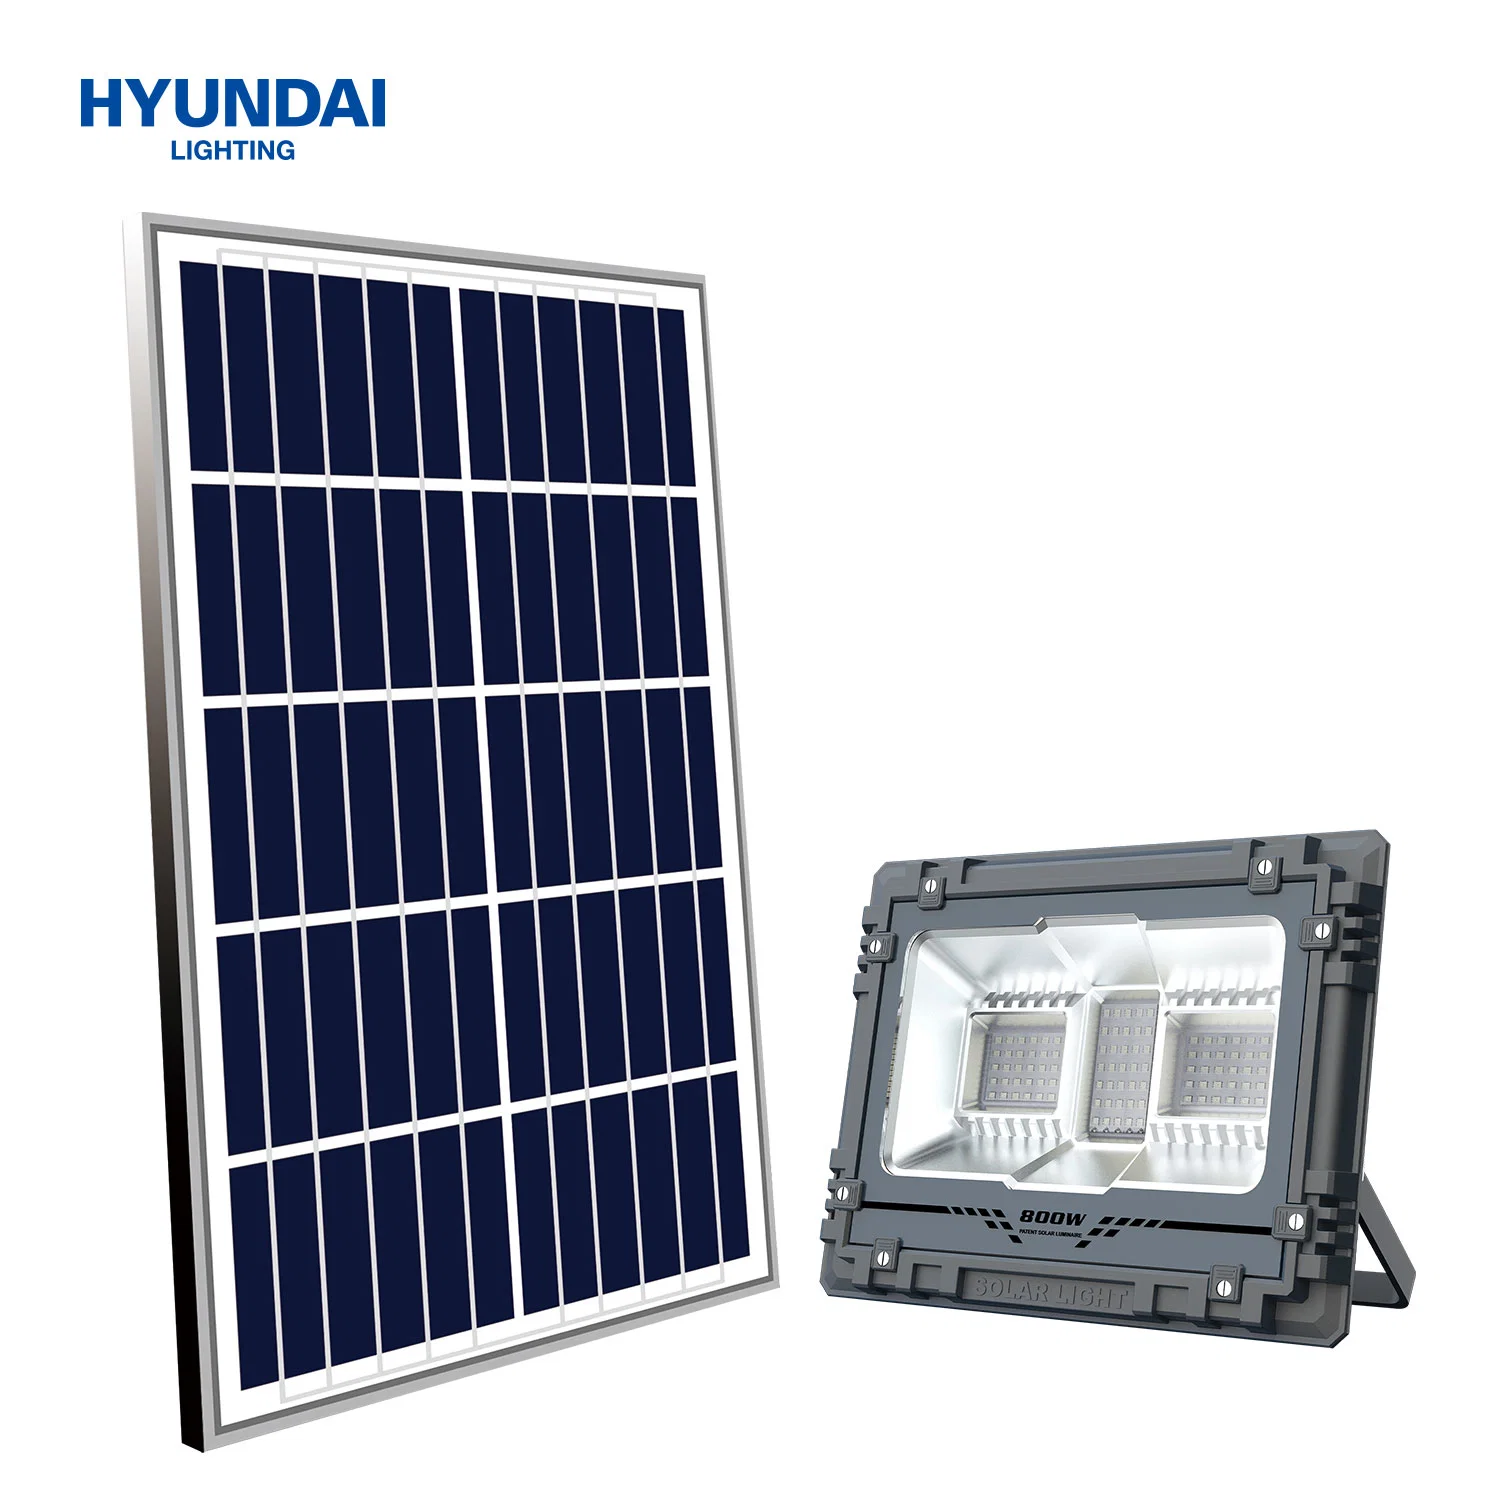 Hyundai Energieeinsparung Großhandel 60-800W IP65 Wasserdichte Außenleuchten Solar Powered RGB Solar LED Garten Flood Street Lighting